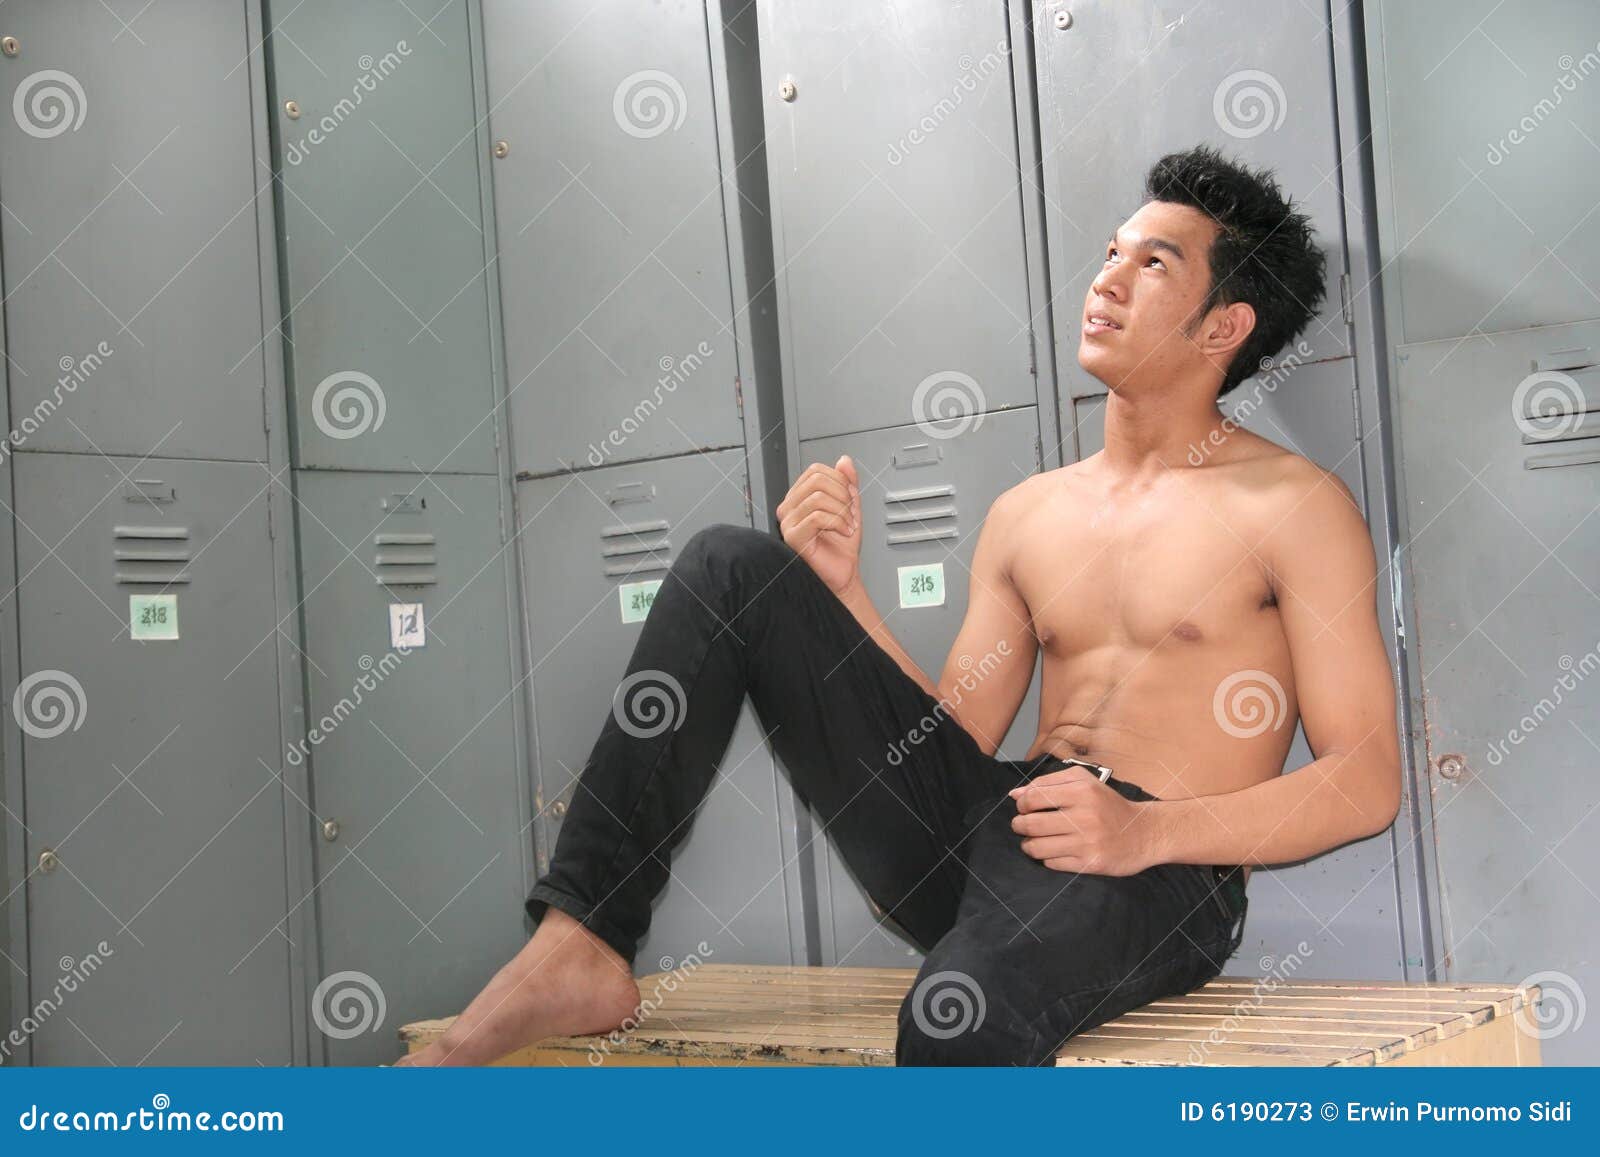 College Men Hidden Locker Room Pics Gay Fetish pic